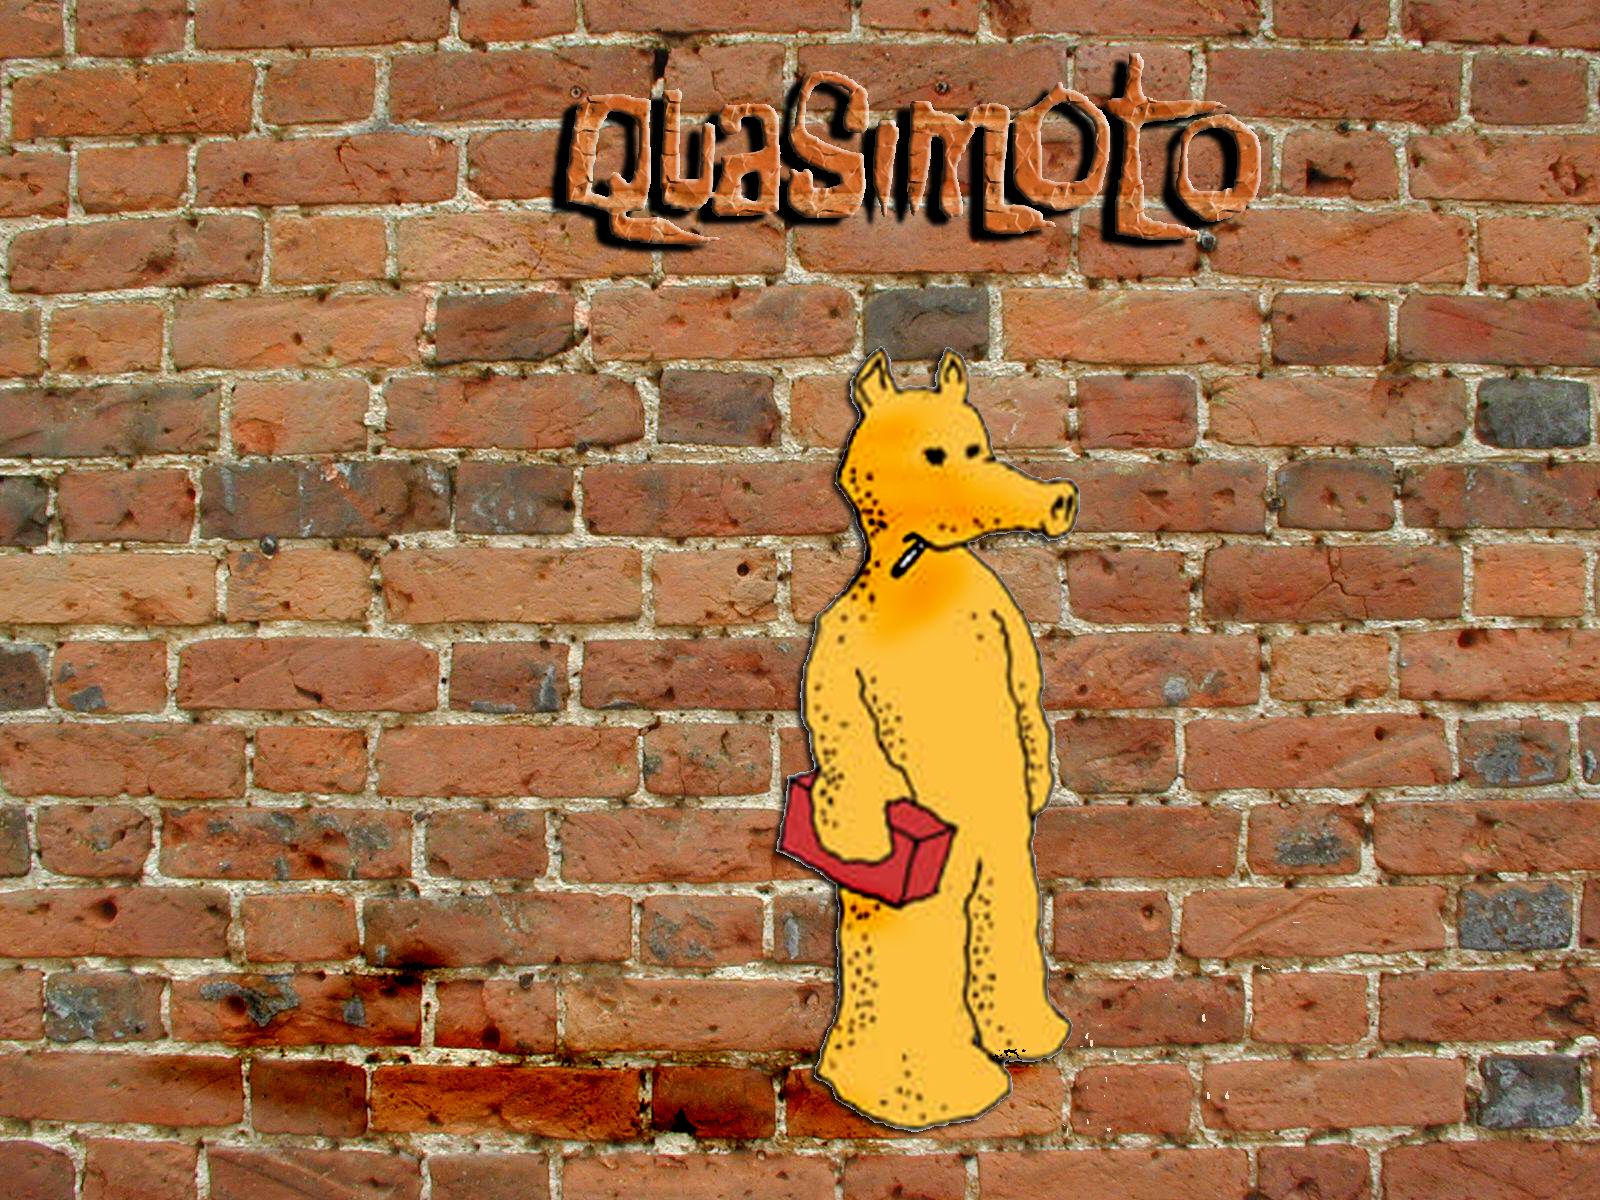 Quasimoto pics and logo. Photo and image of Quasimoto